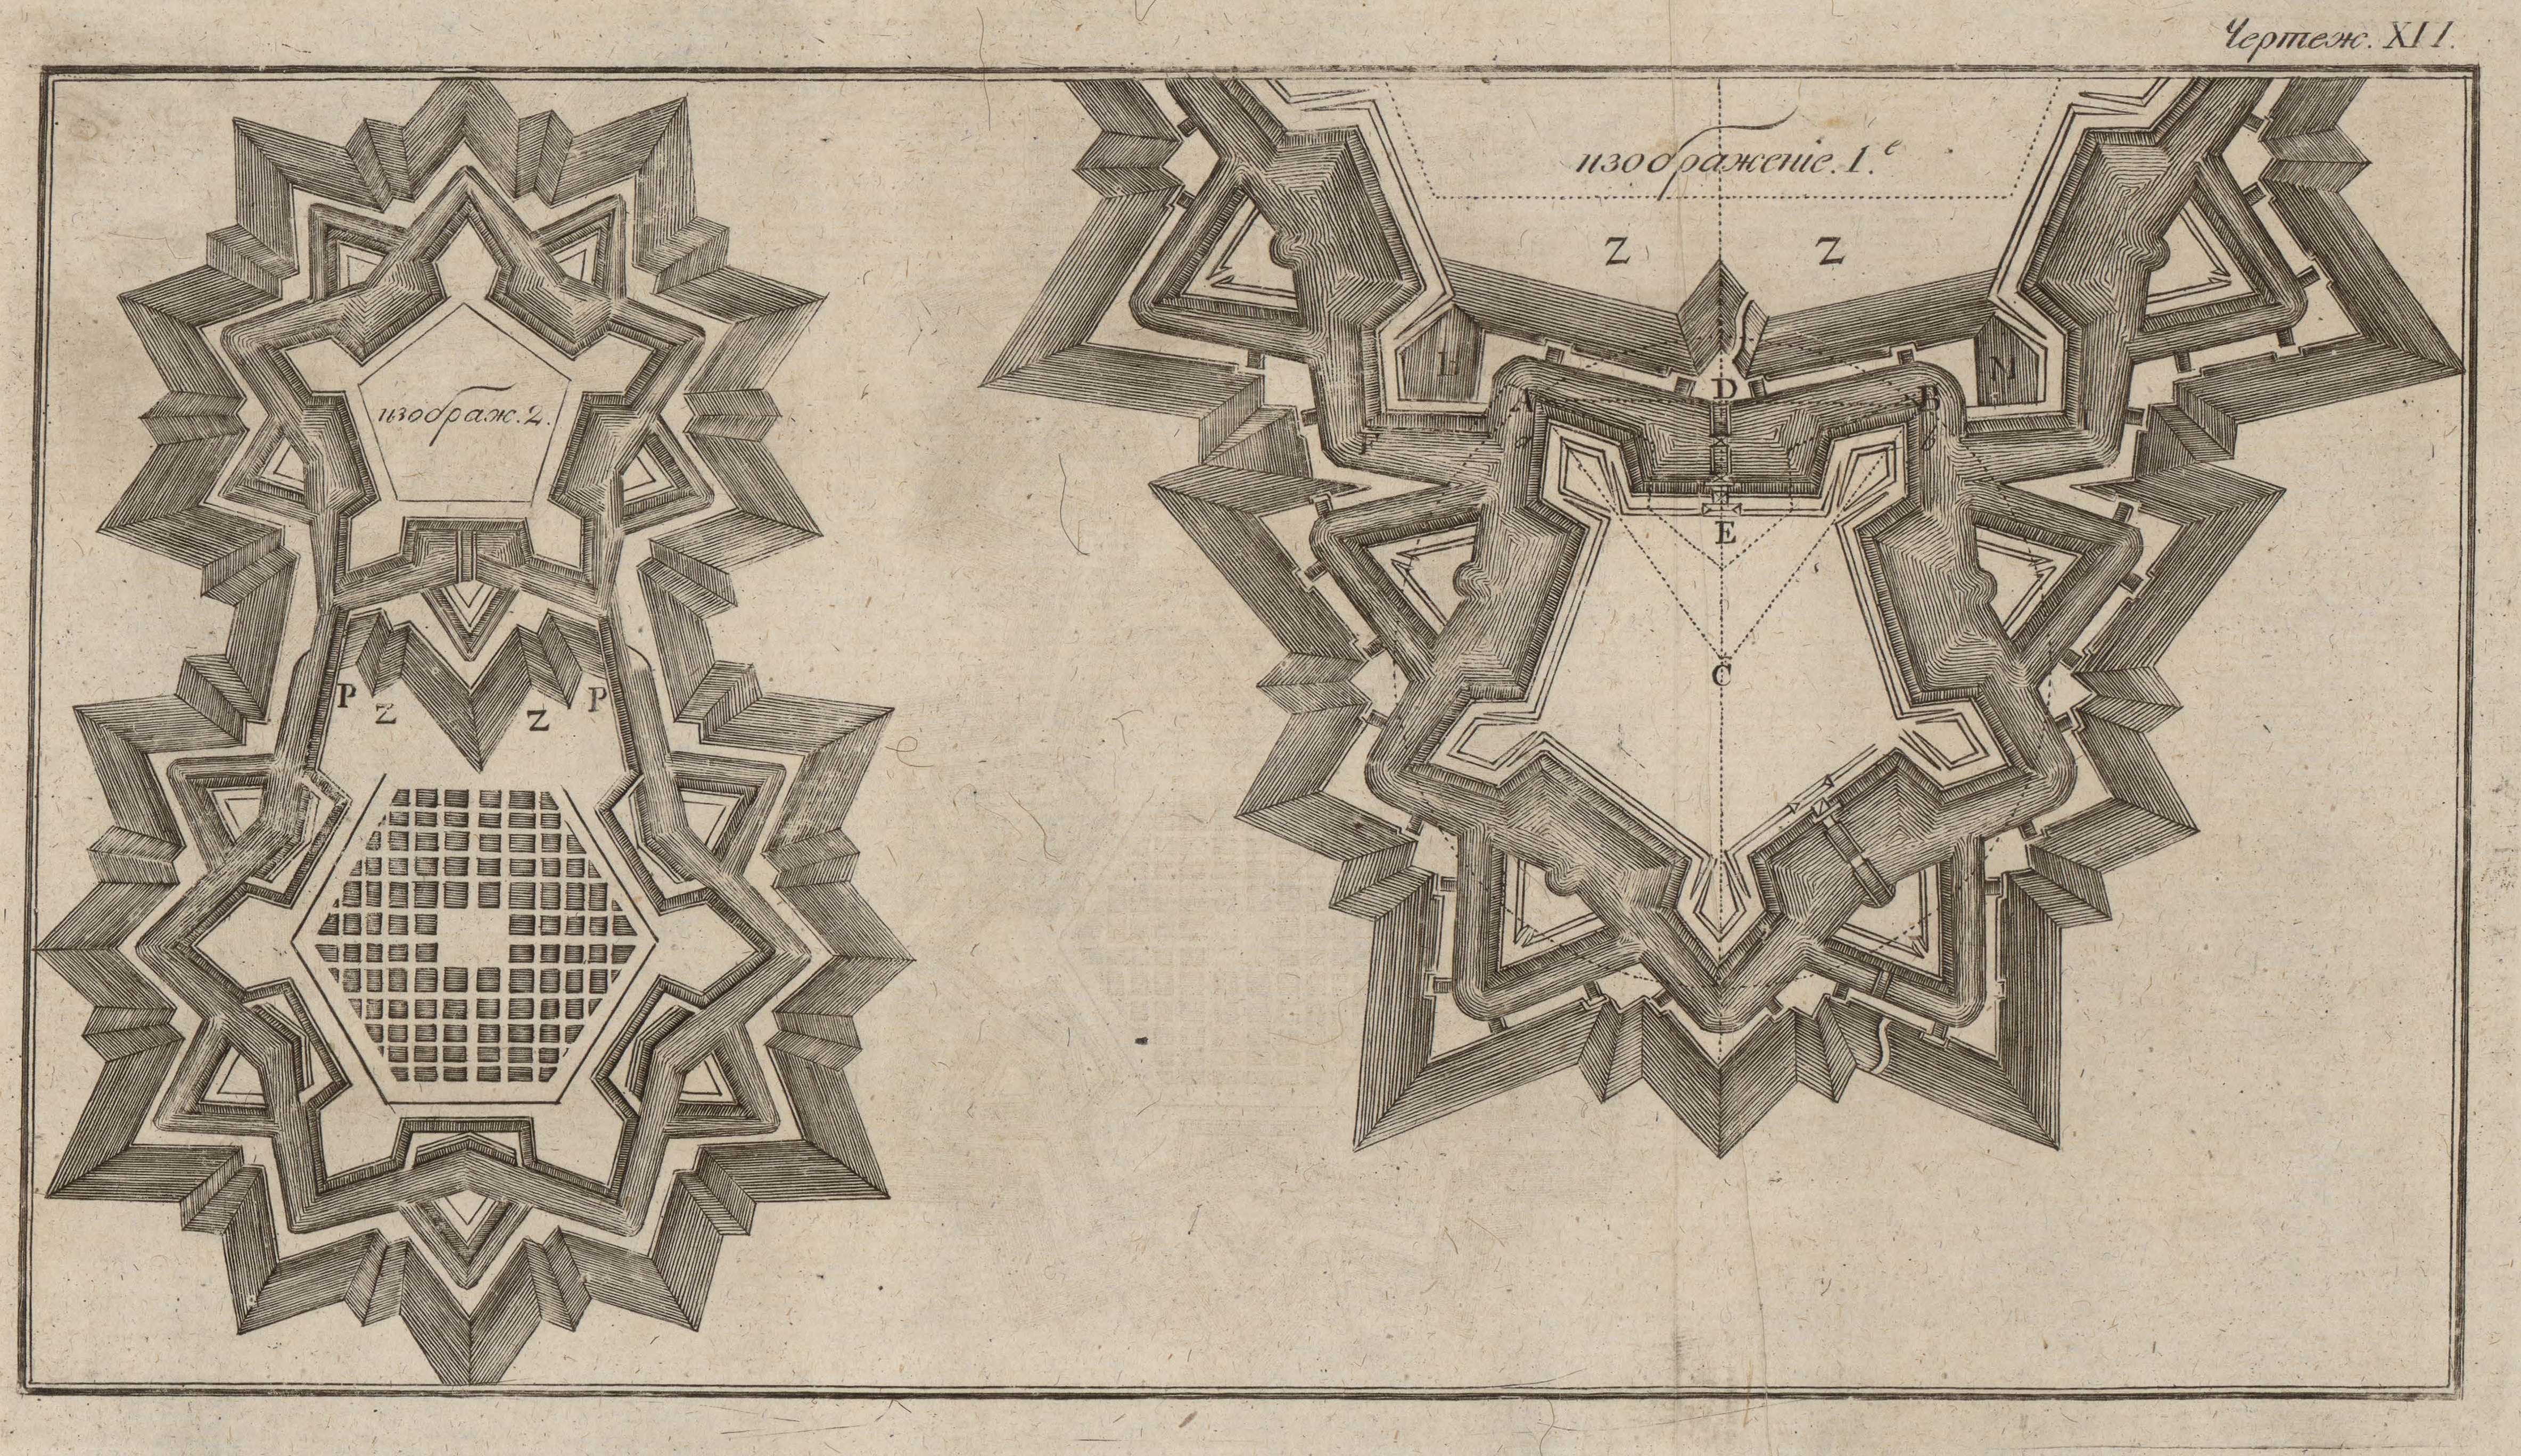 Полная наука военного укрепления, или Фортификация, сочиненная Ефимом Войтяховским. — Москва, 1814